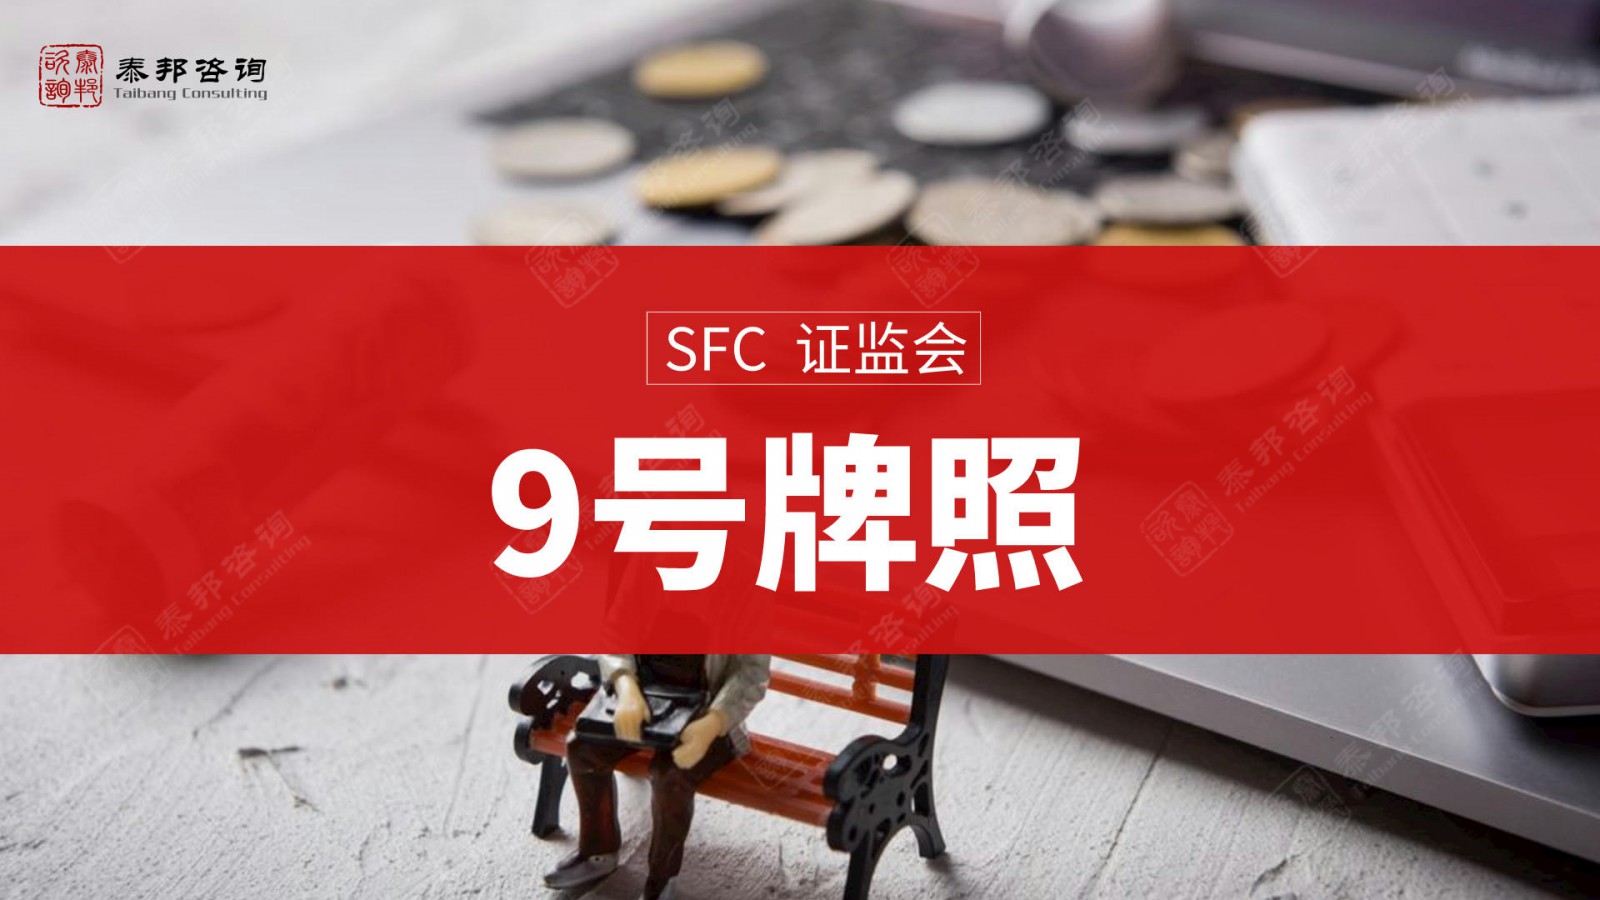 申请代办香港149号金融牌照五步流程